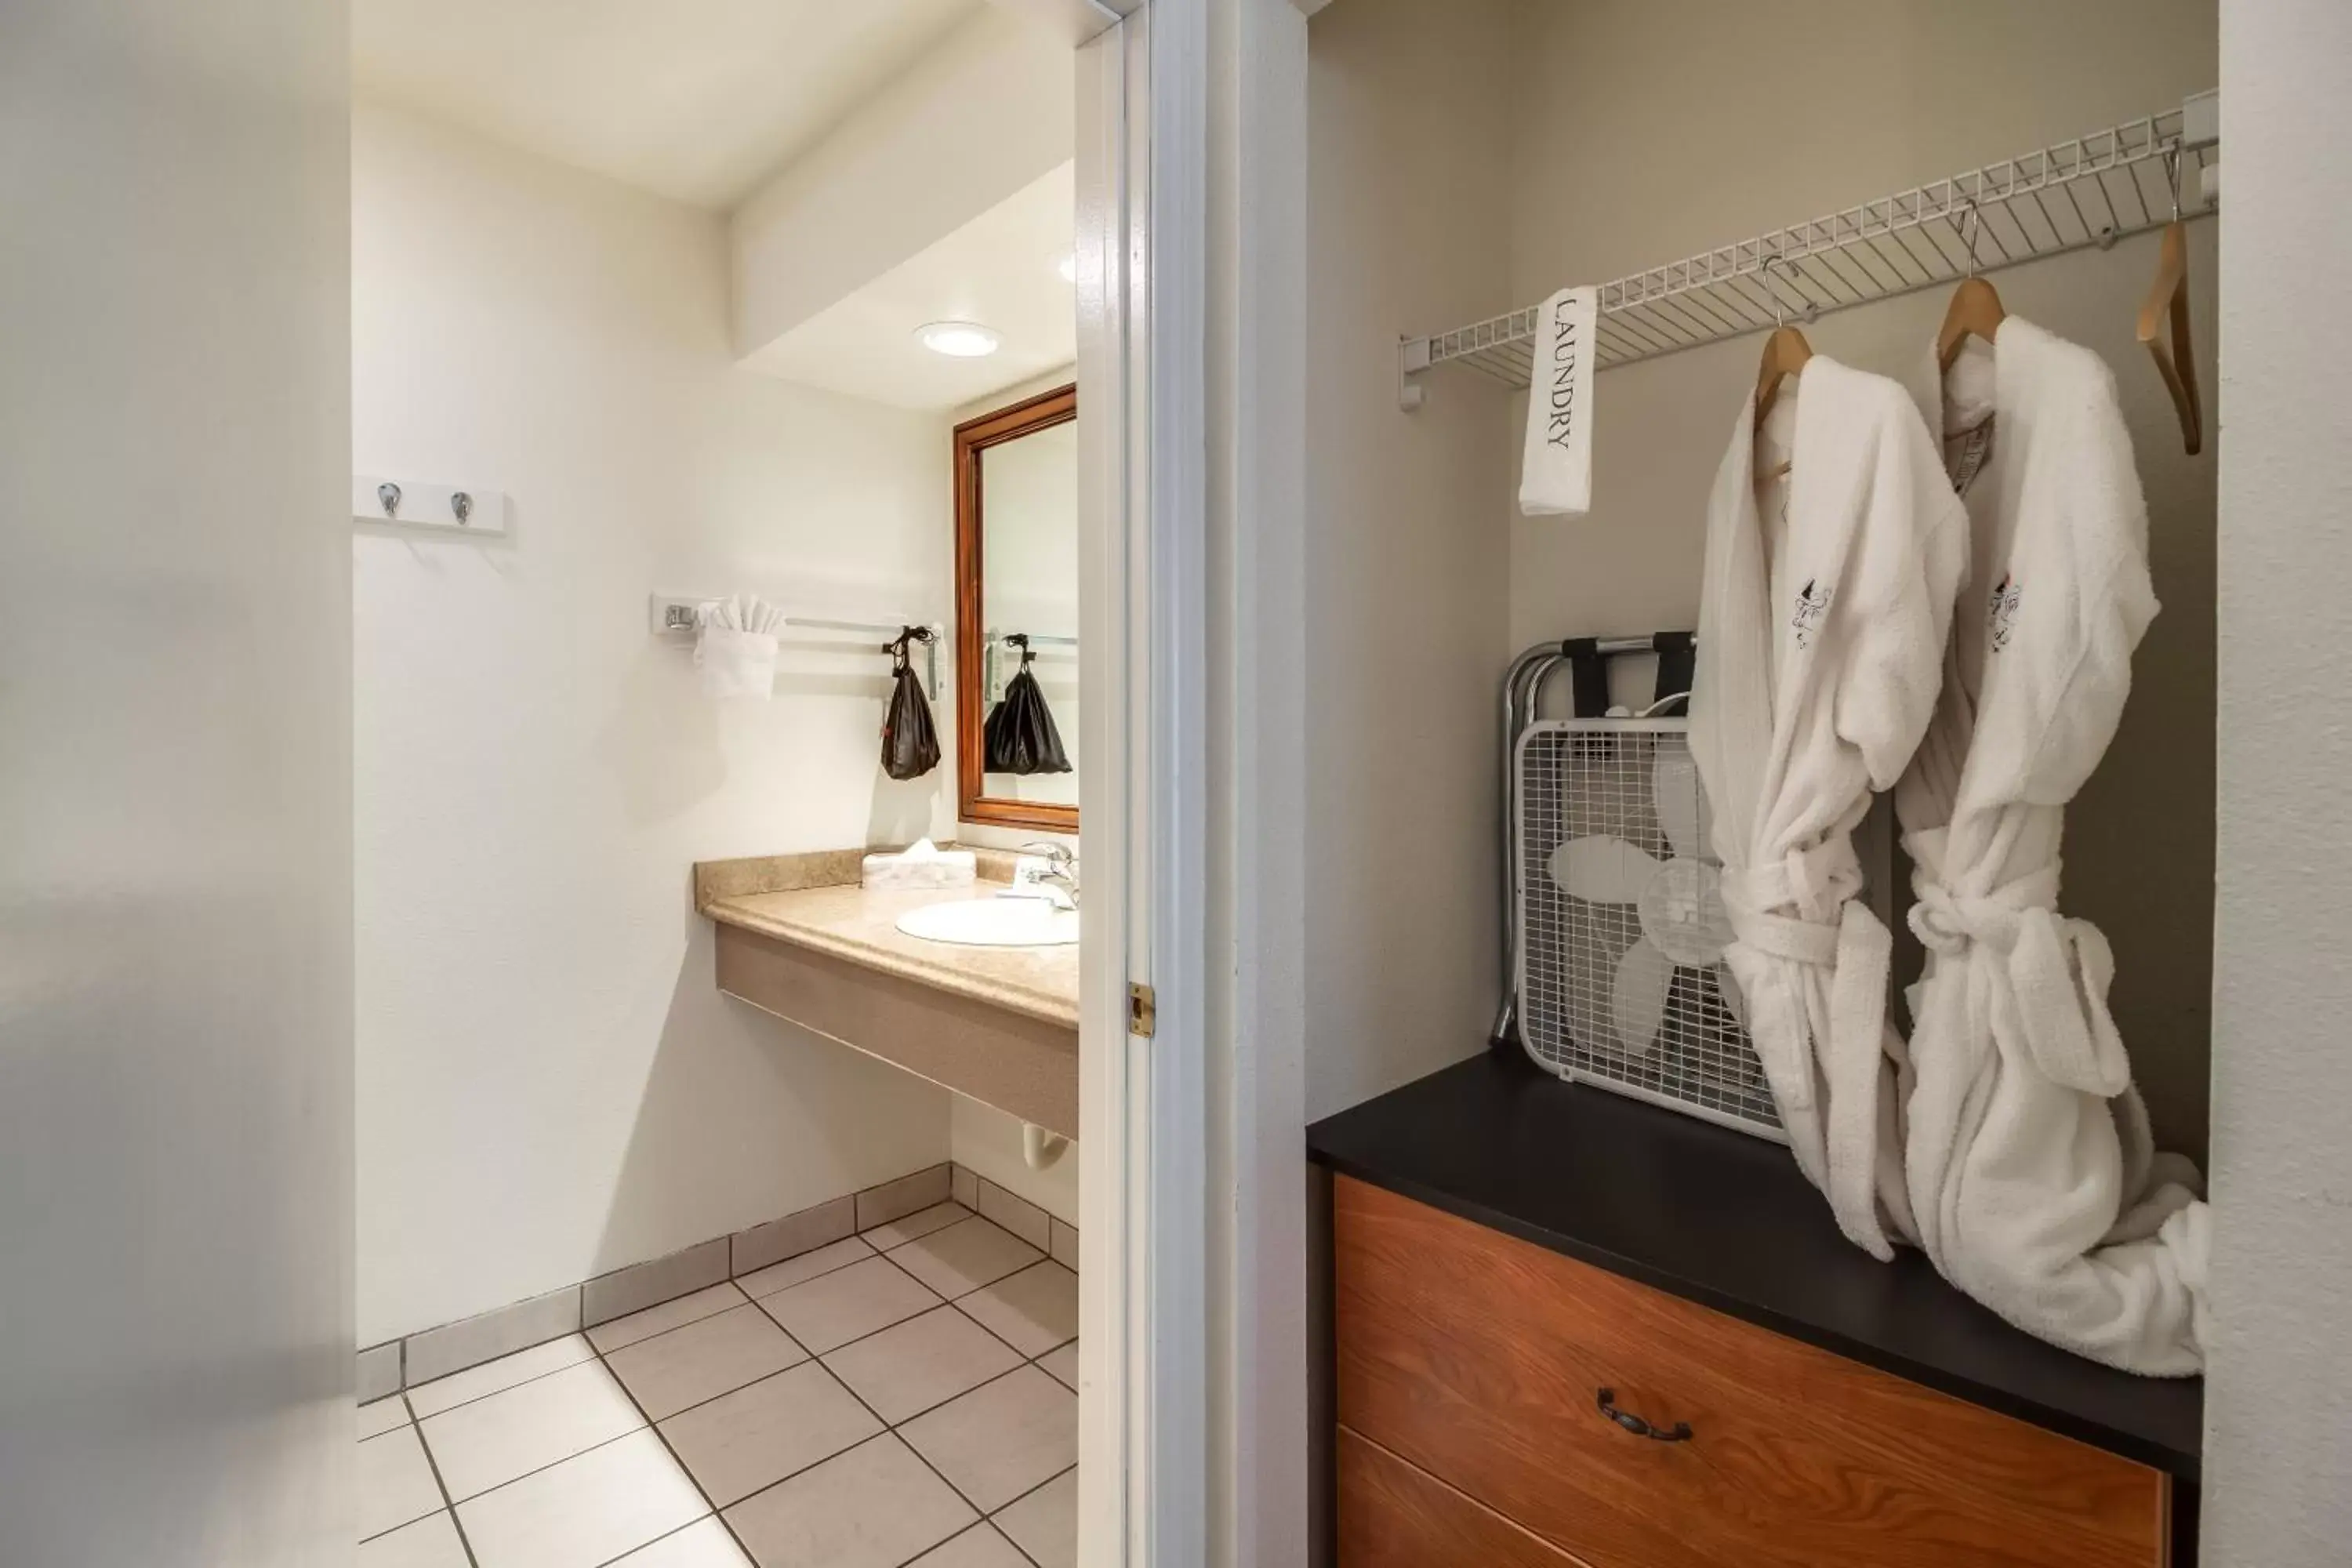 Bathroom in Twin Peaks Lodge & Hot Springs